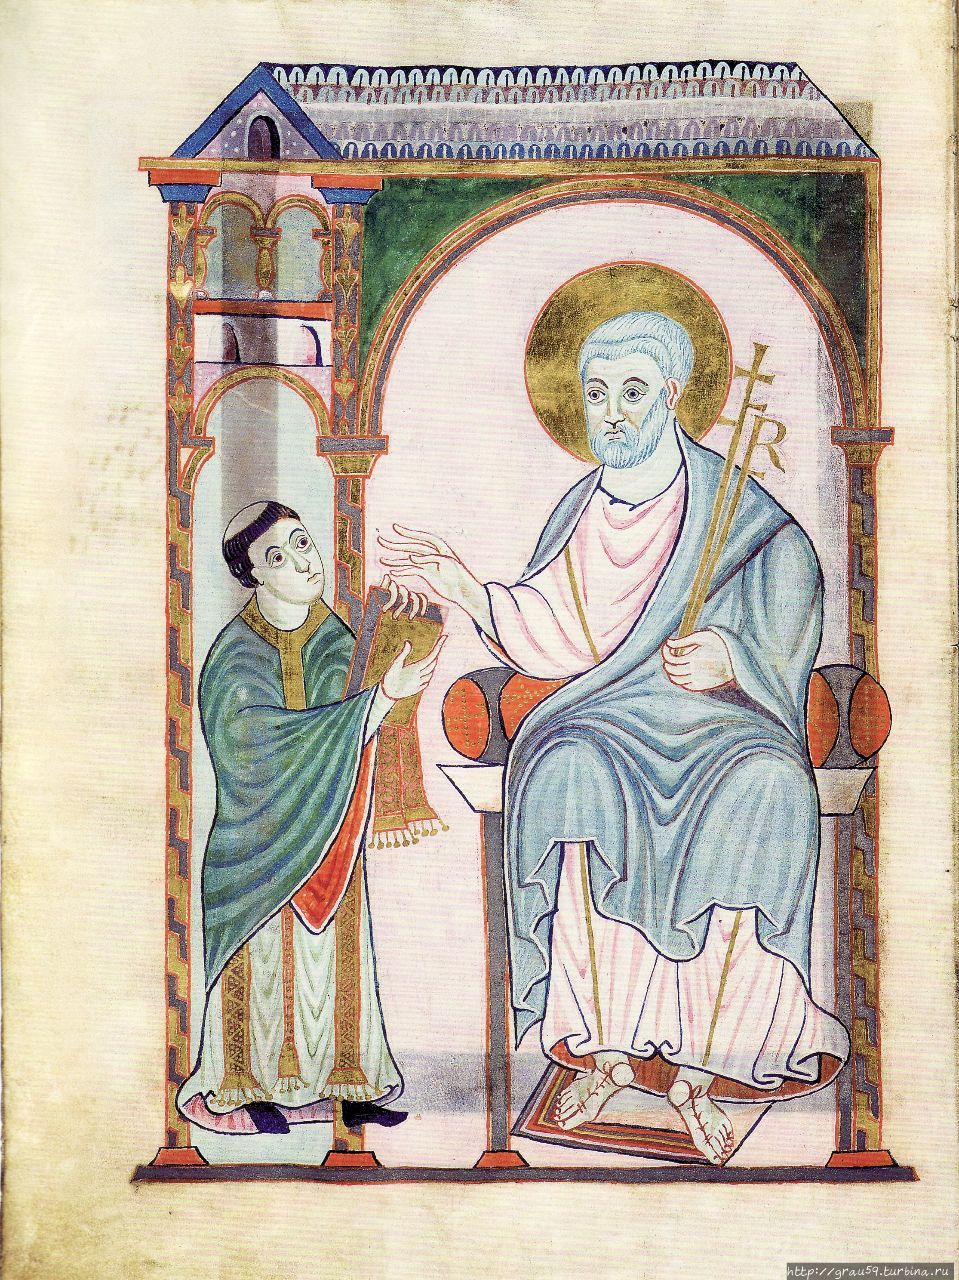 Иллюстрация №6 Кодекса Геро Геро вручает кодекс святому Петру (из Интернета) Кёльн, Германия